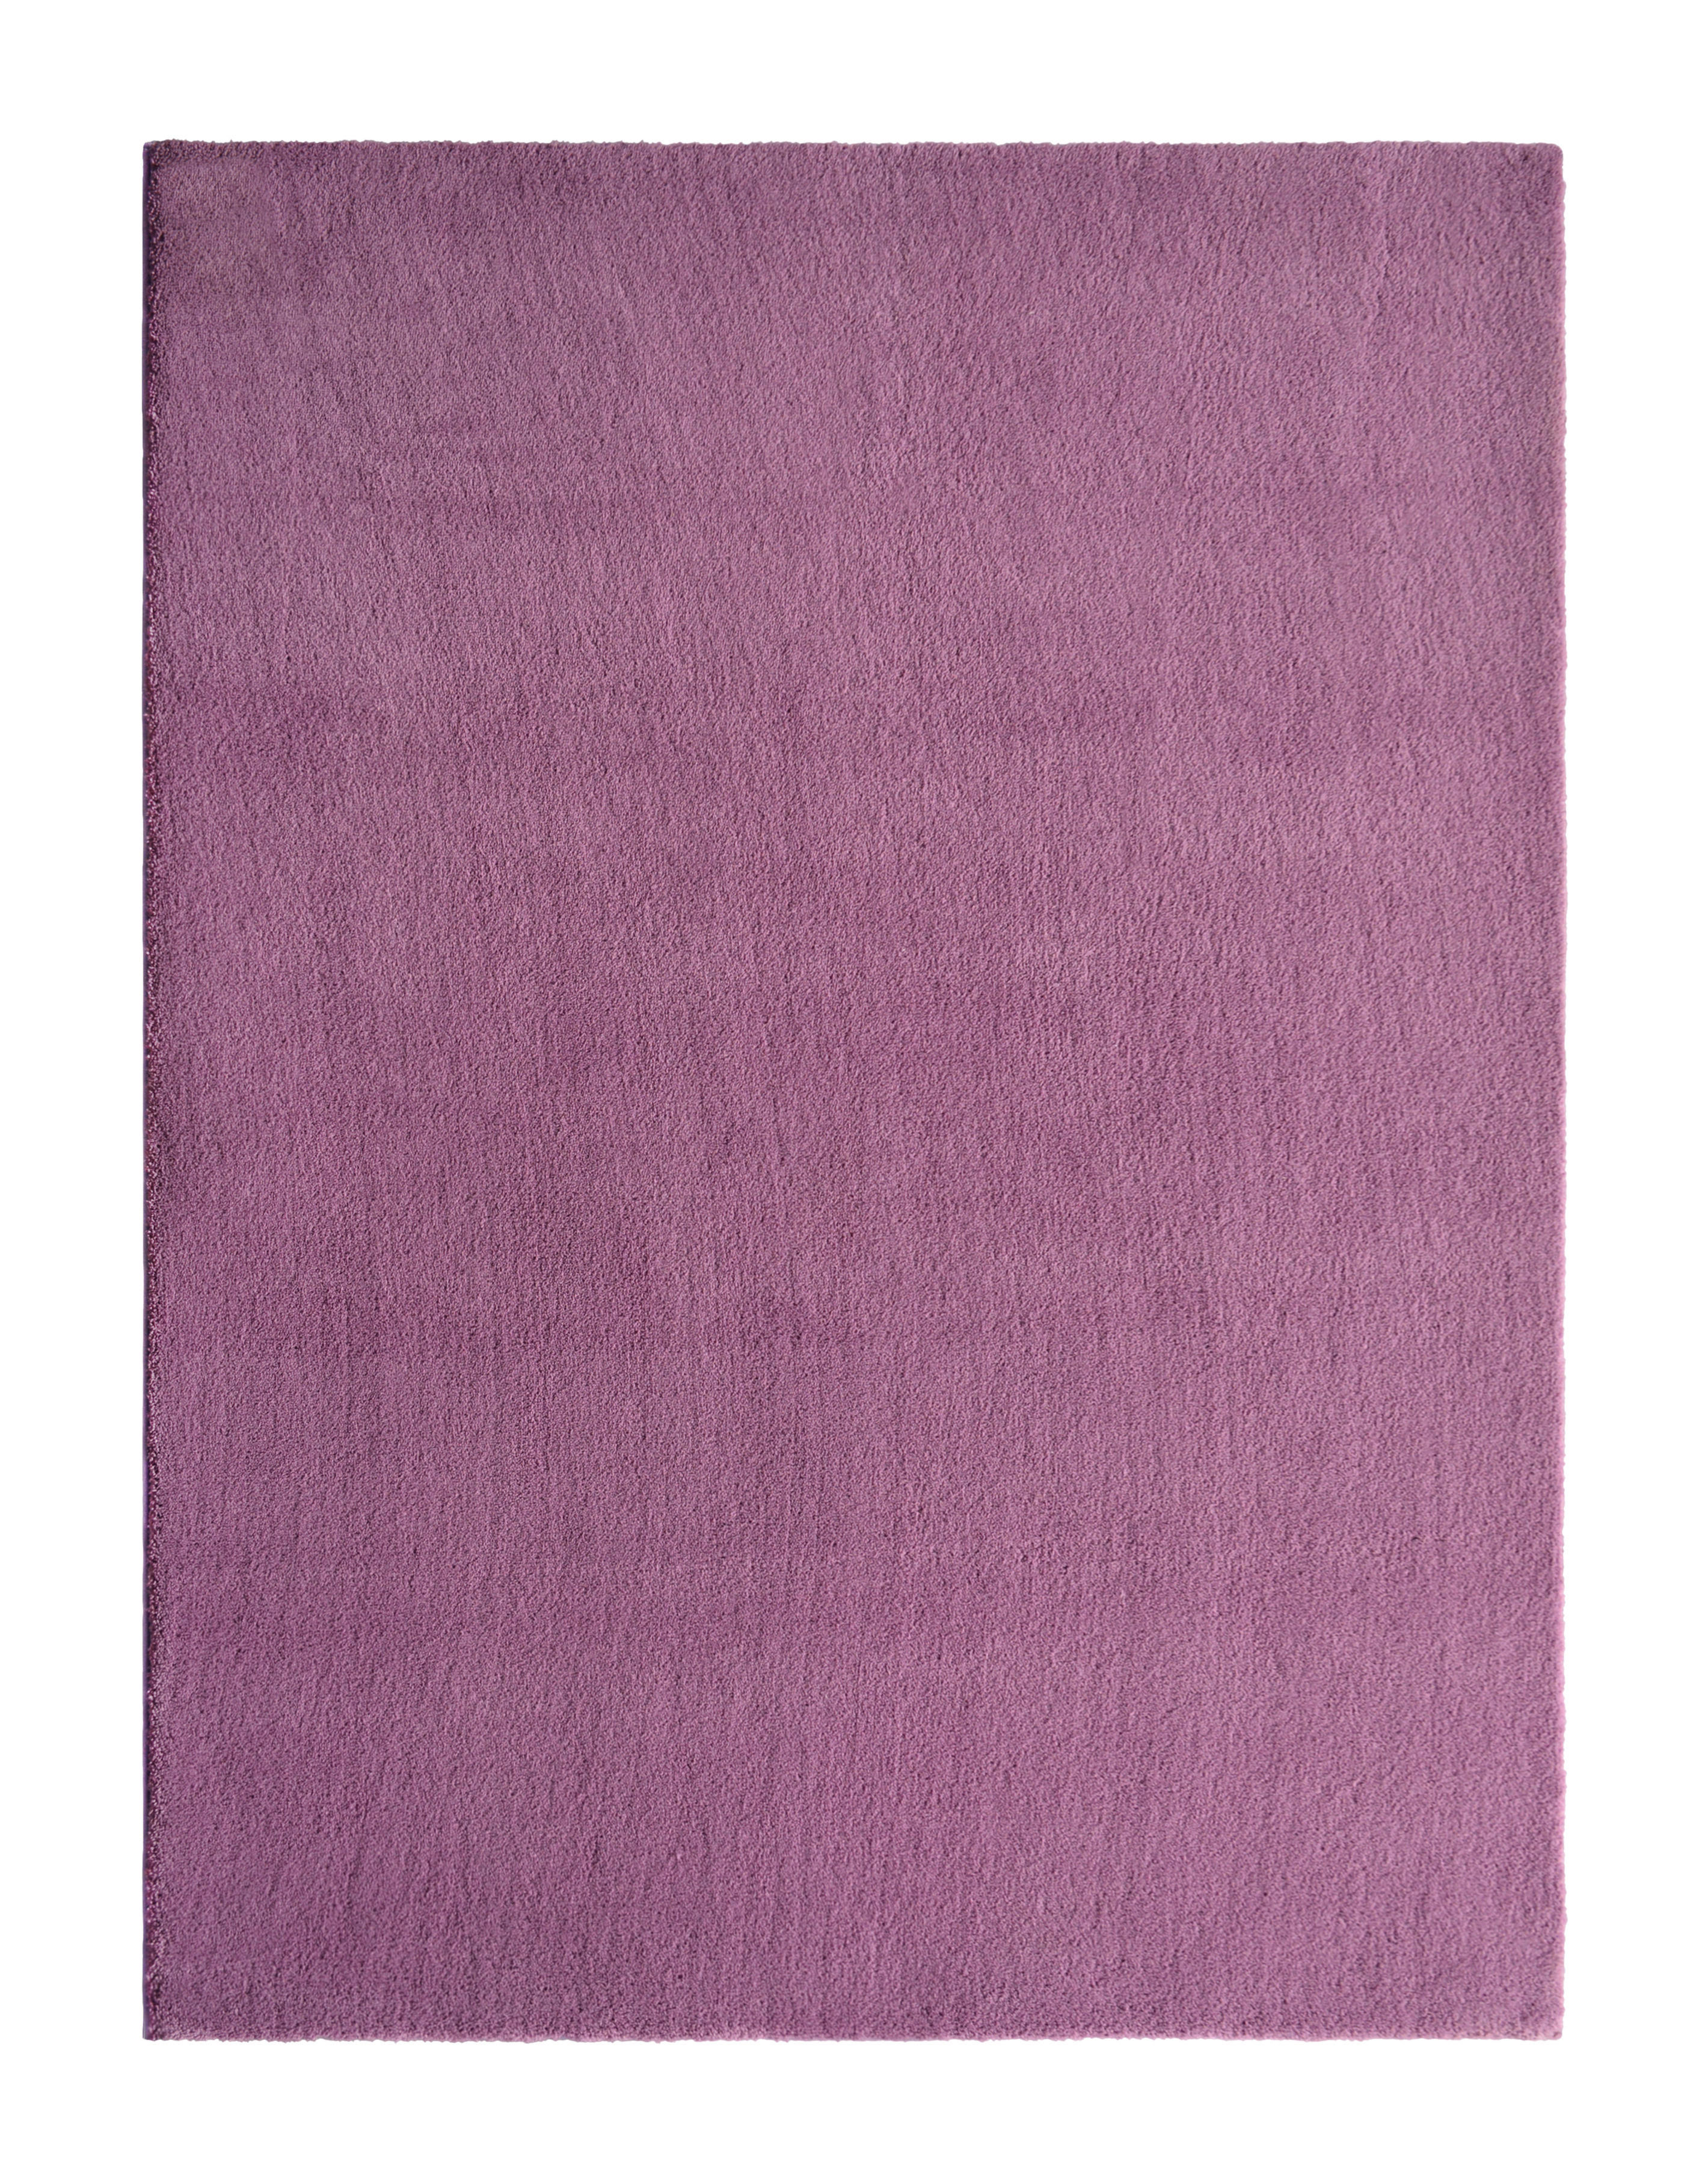 Boxxx HOCHFLORTEPPICH Cosy, 120/160 cm, bordeaux - bordeaux - textil